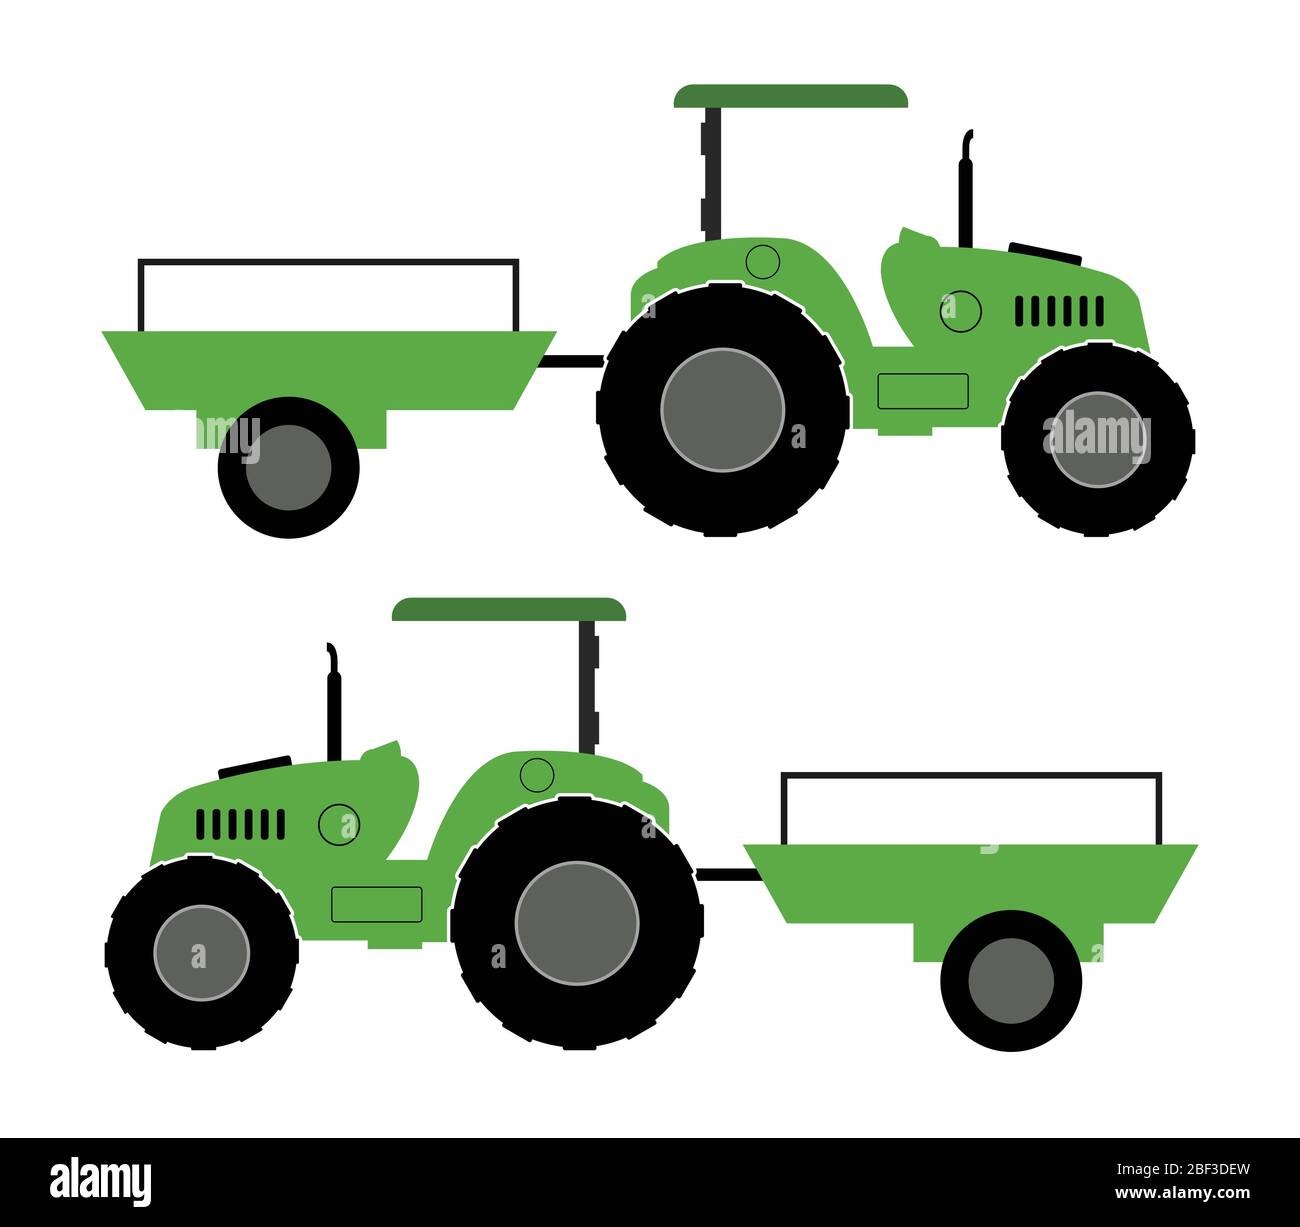 Traktor-Symbol mit einem Wagen in Vektor auf weißem Hintergrund dargestellt Stock Vektor